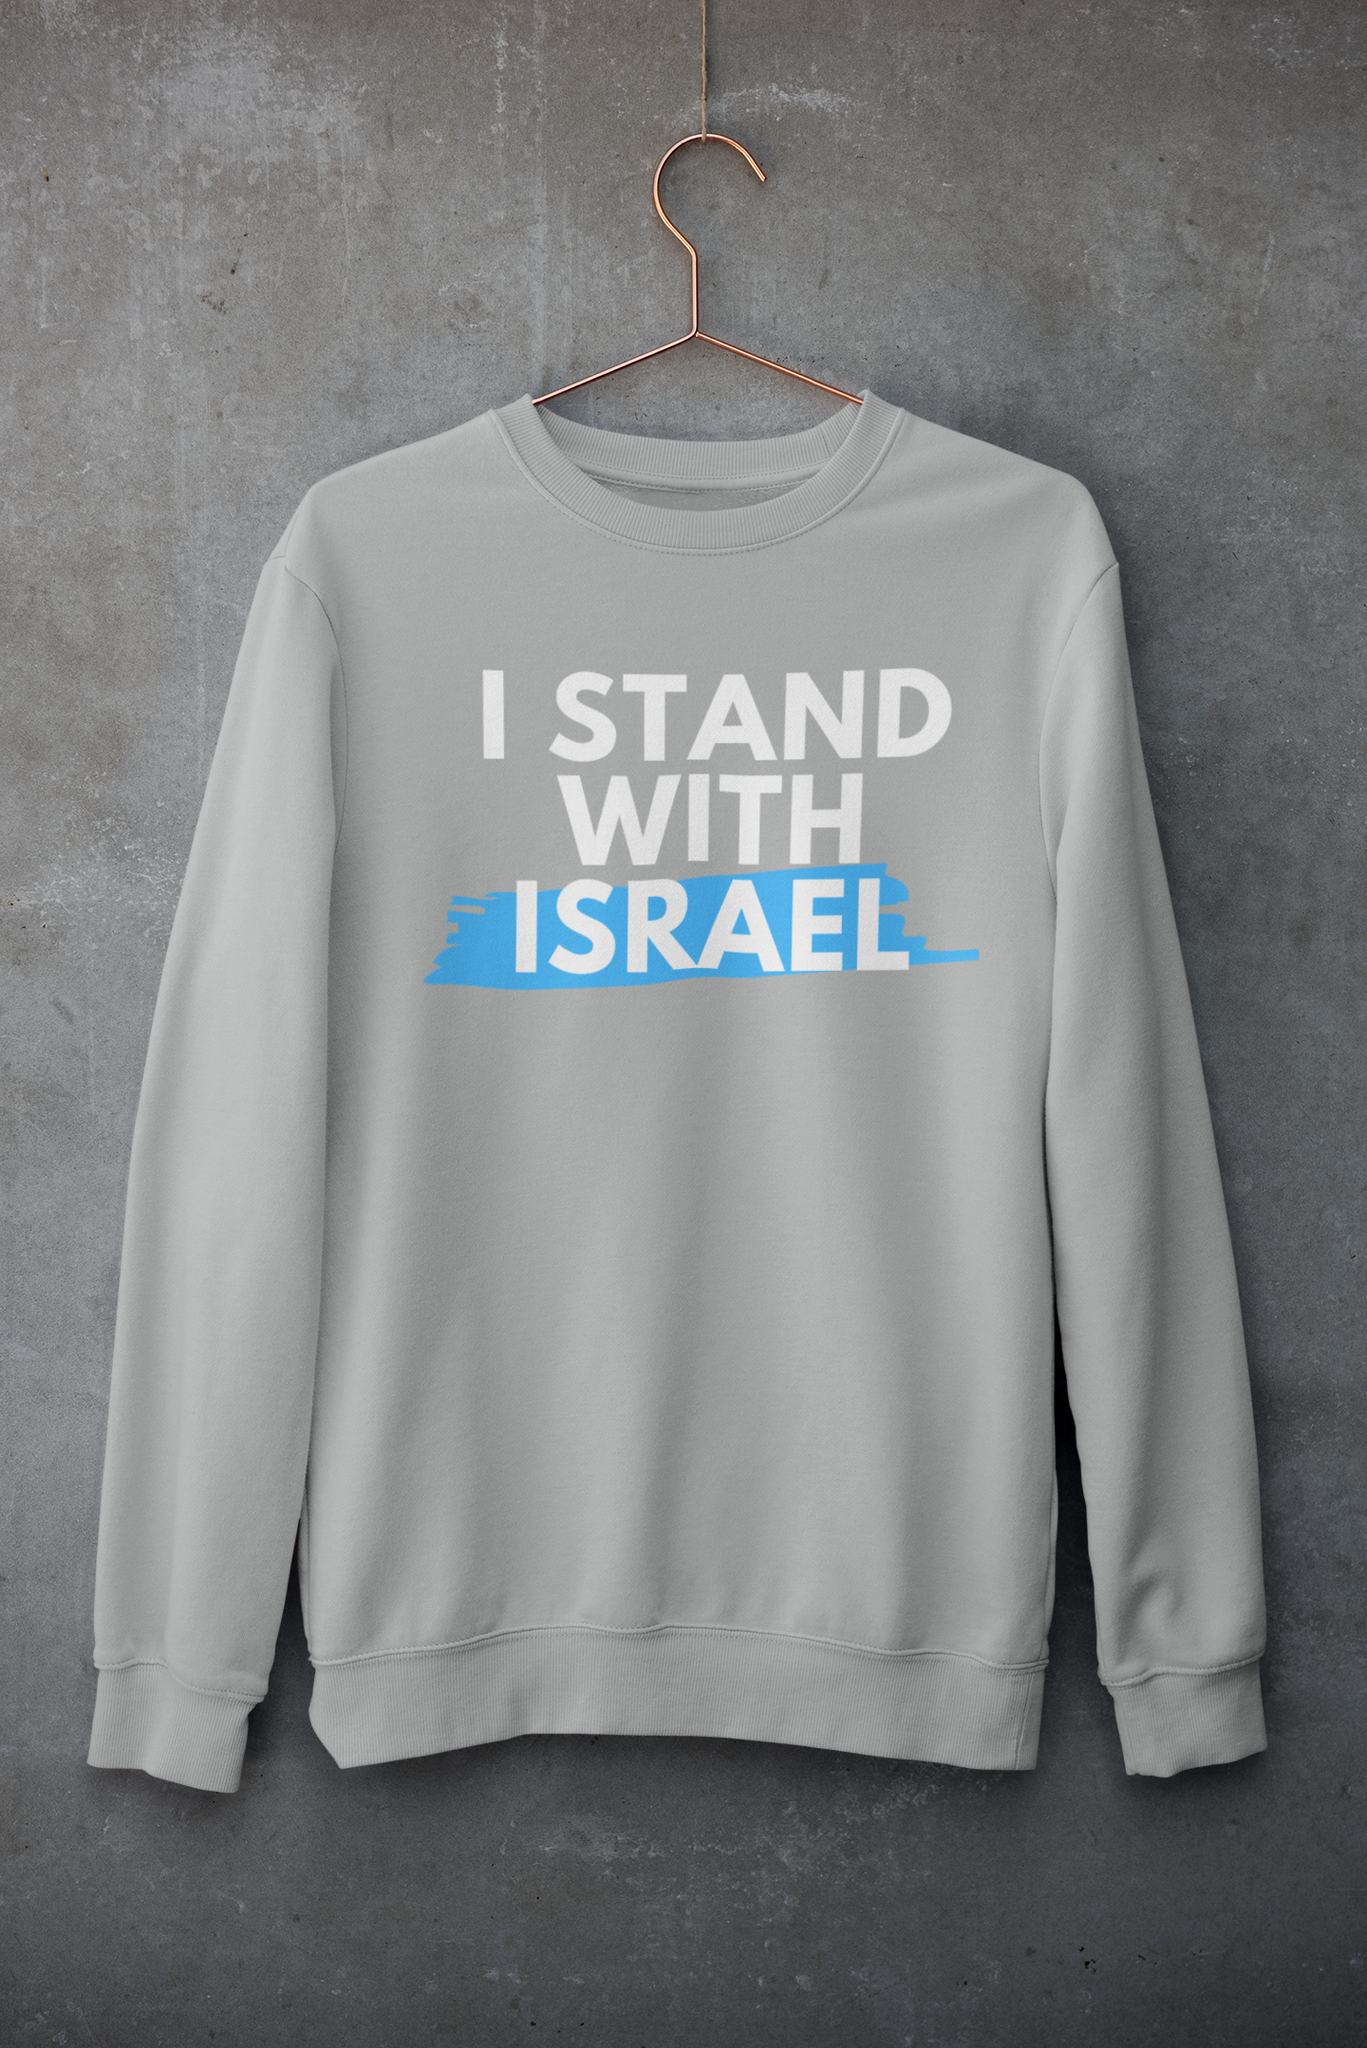 I Stand With Israel Sweatshirt Unisex